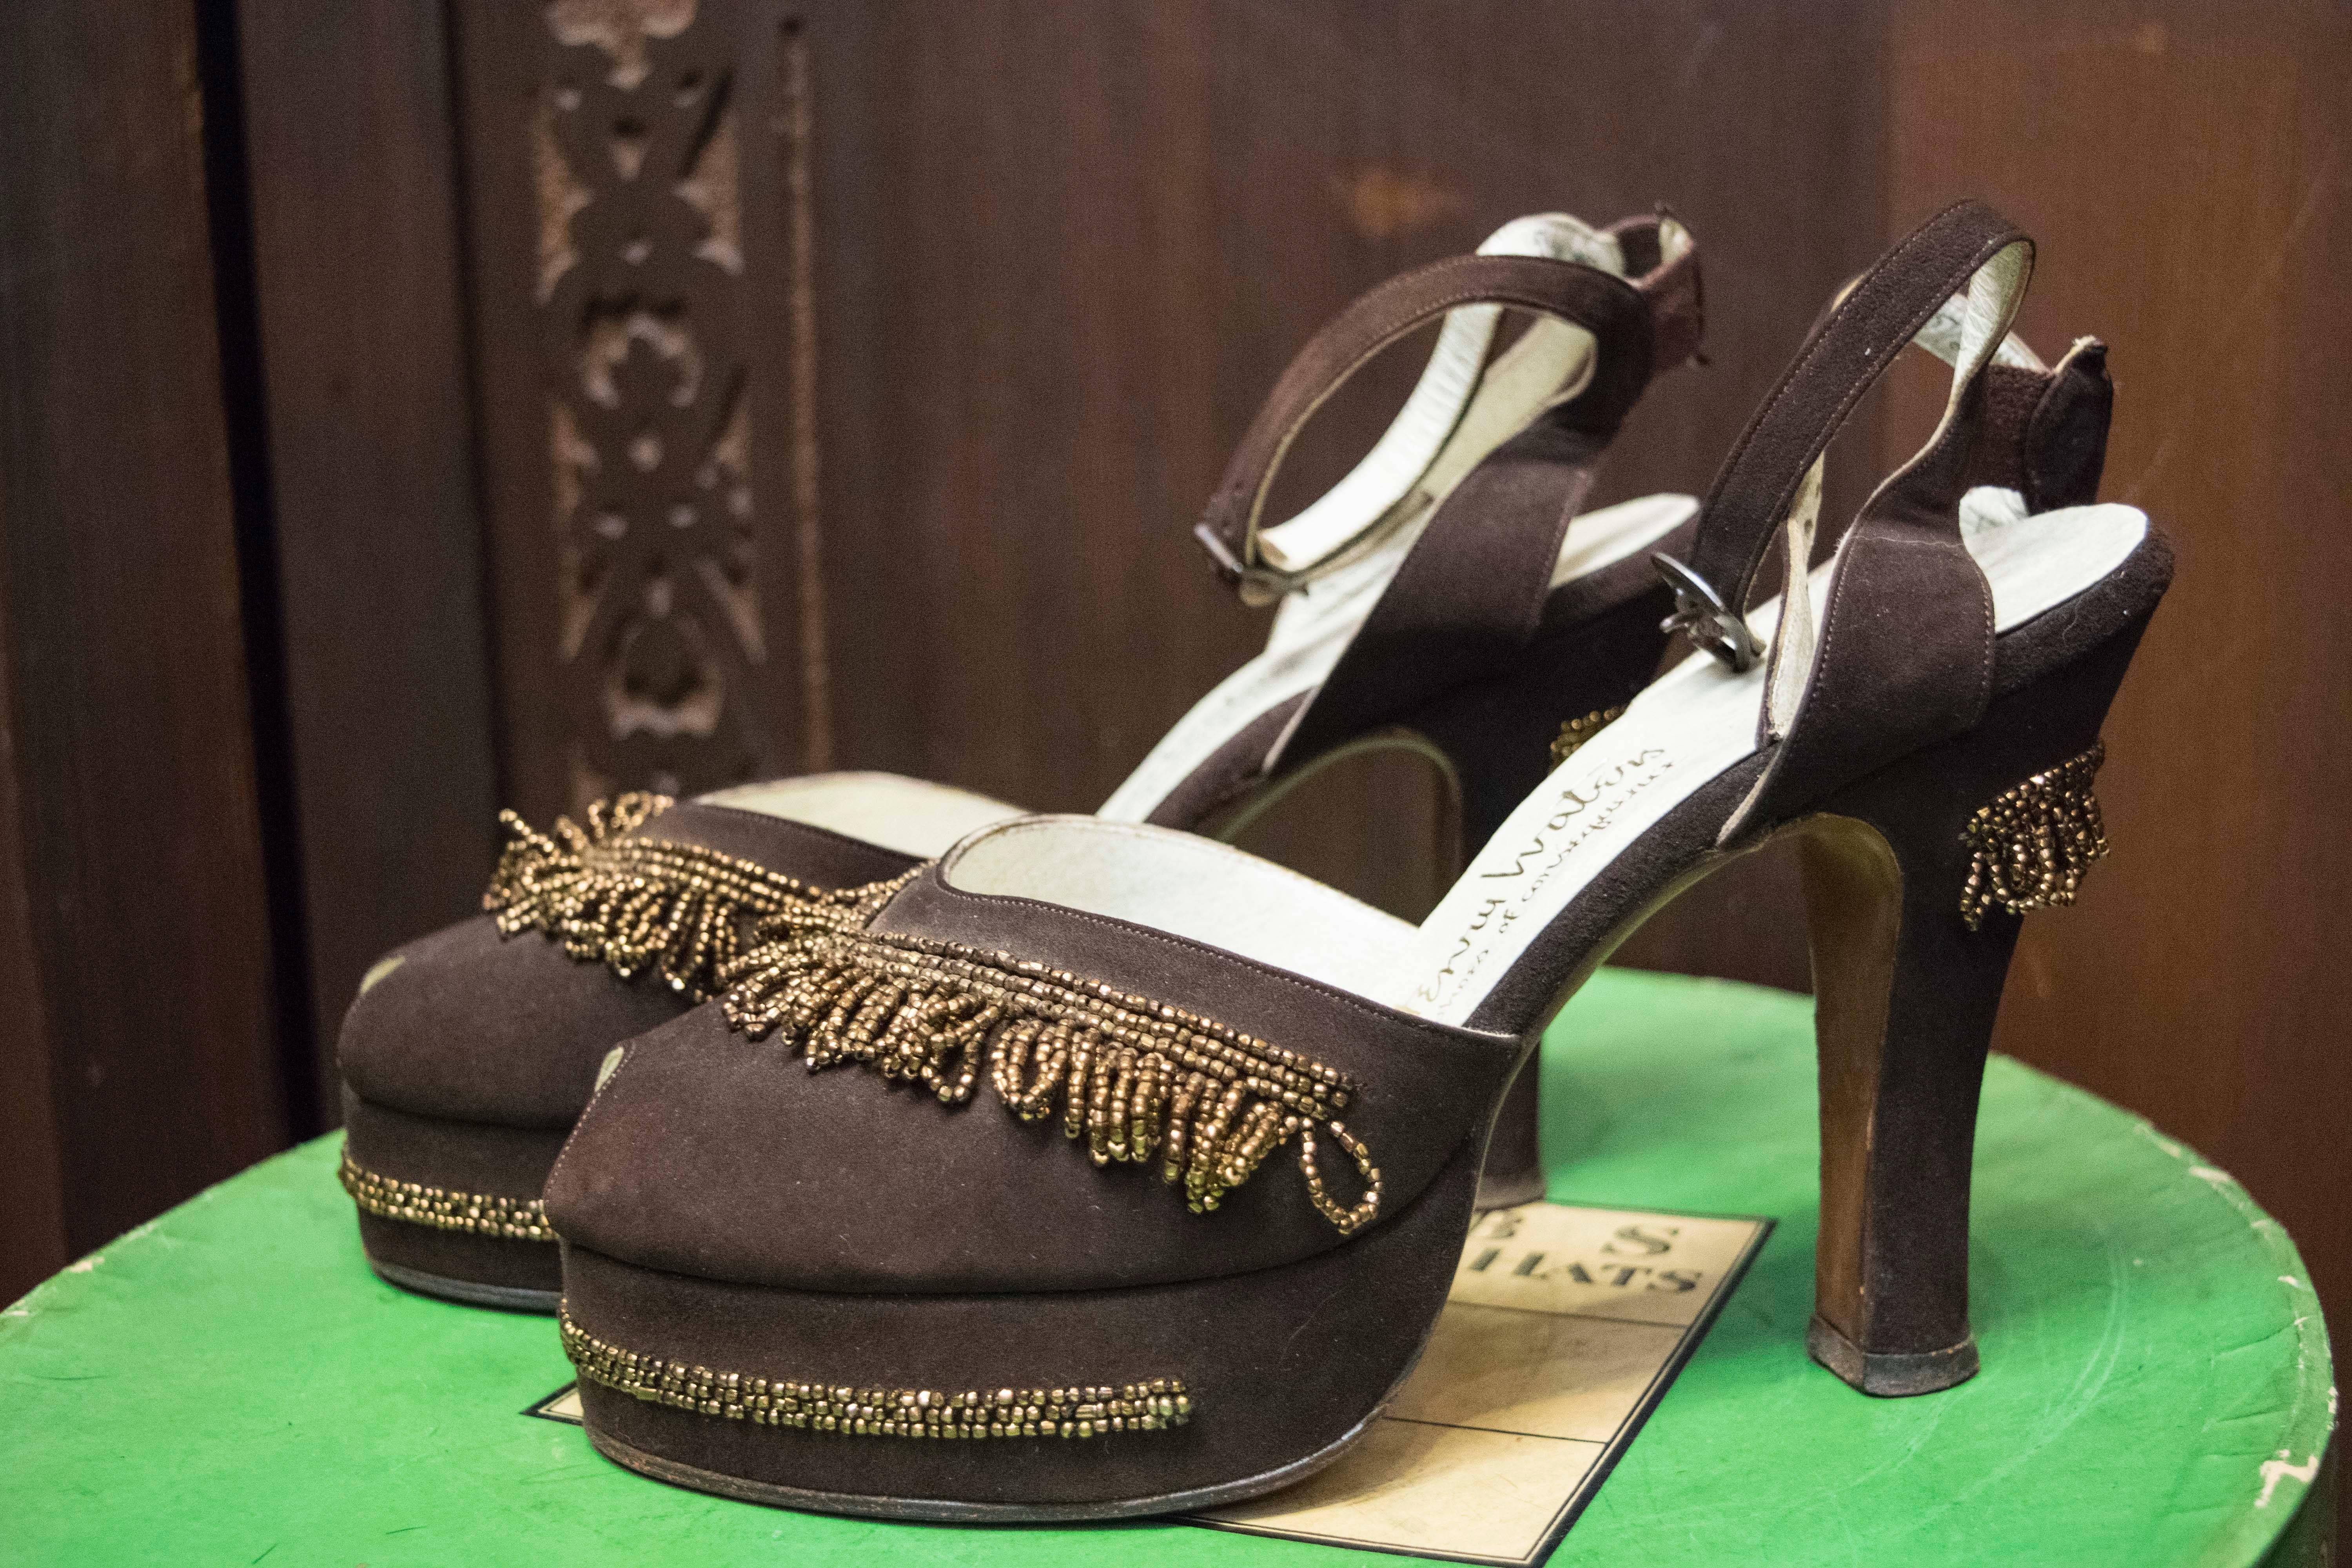 chaussures à plateforme en perles marron des années 1940

Taille 6 US